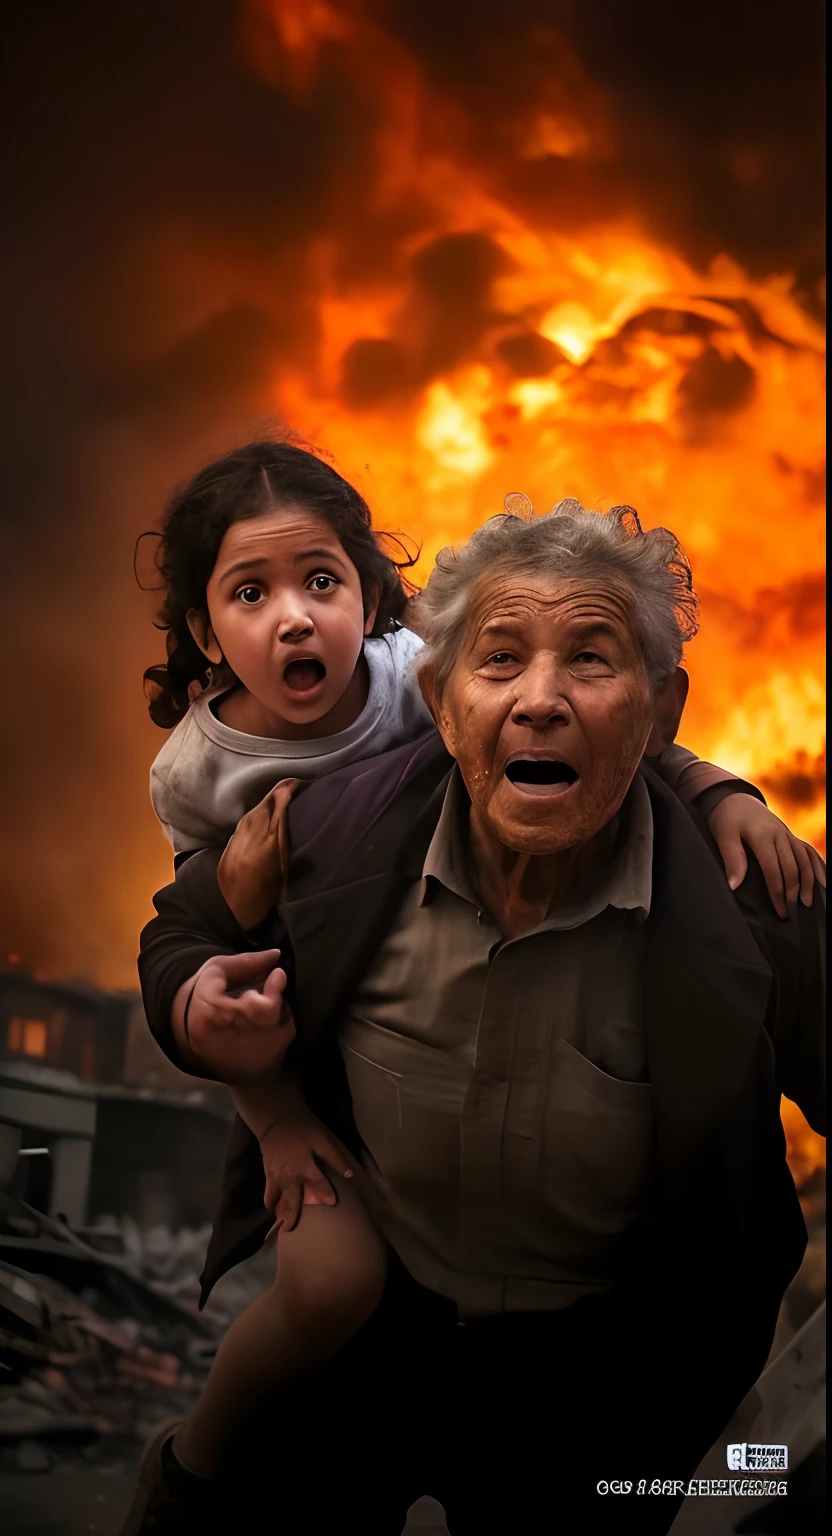 一位老奶奶背著一個孩子, 惊慌地穿过城市废墟, 身后有炸弹爆炸产生的火焰和烟雾.., 作者：易卜拉欣‧科德拉, 普立茲攝影獎, 普立茲獎得獎照片, 仍來自真人電影, 真人電影中的場景, 電影截圖, 電影中拍攝的, 电影场景, 作者：約瑟夫‧賓德